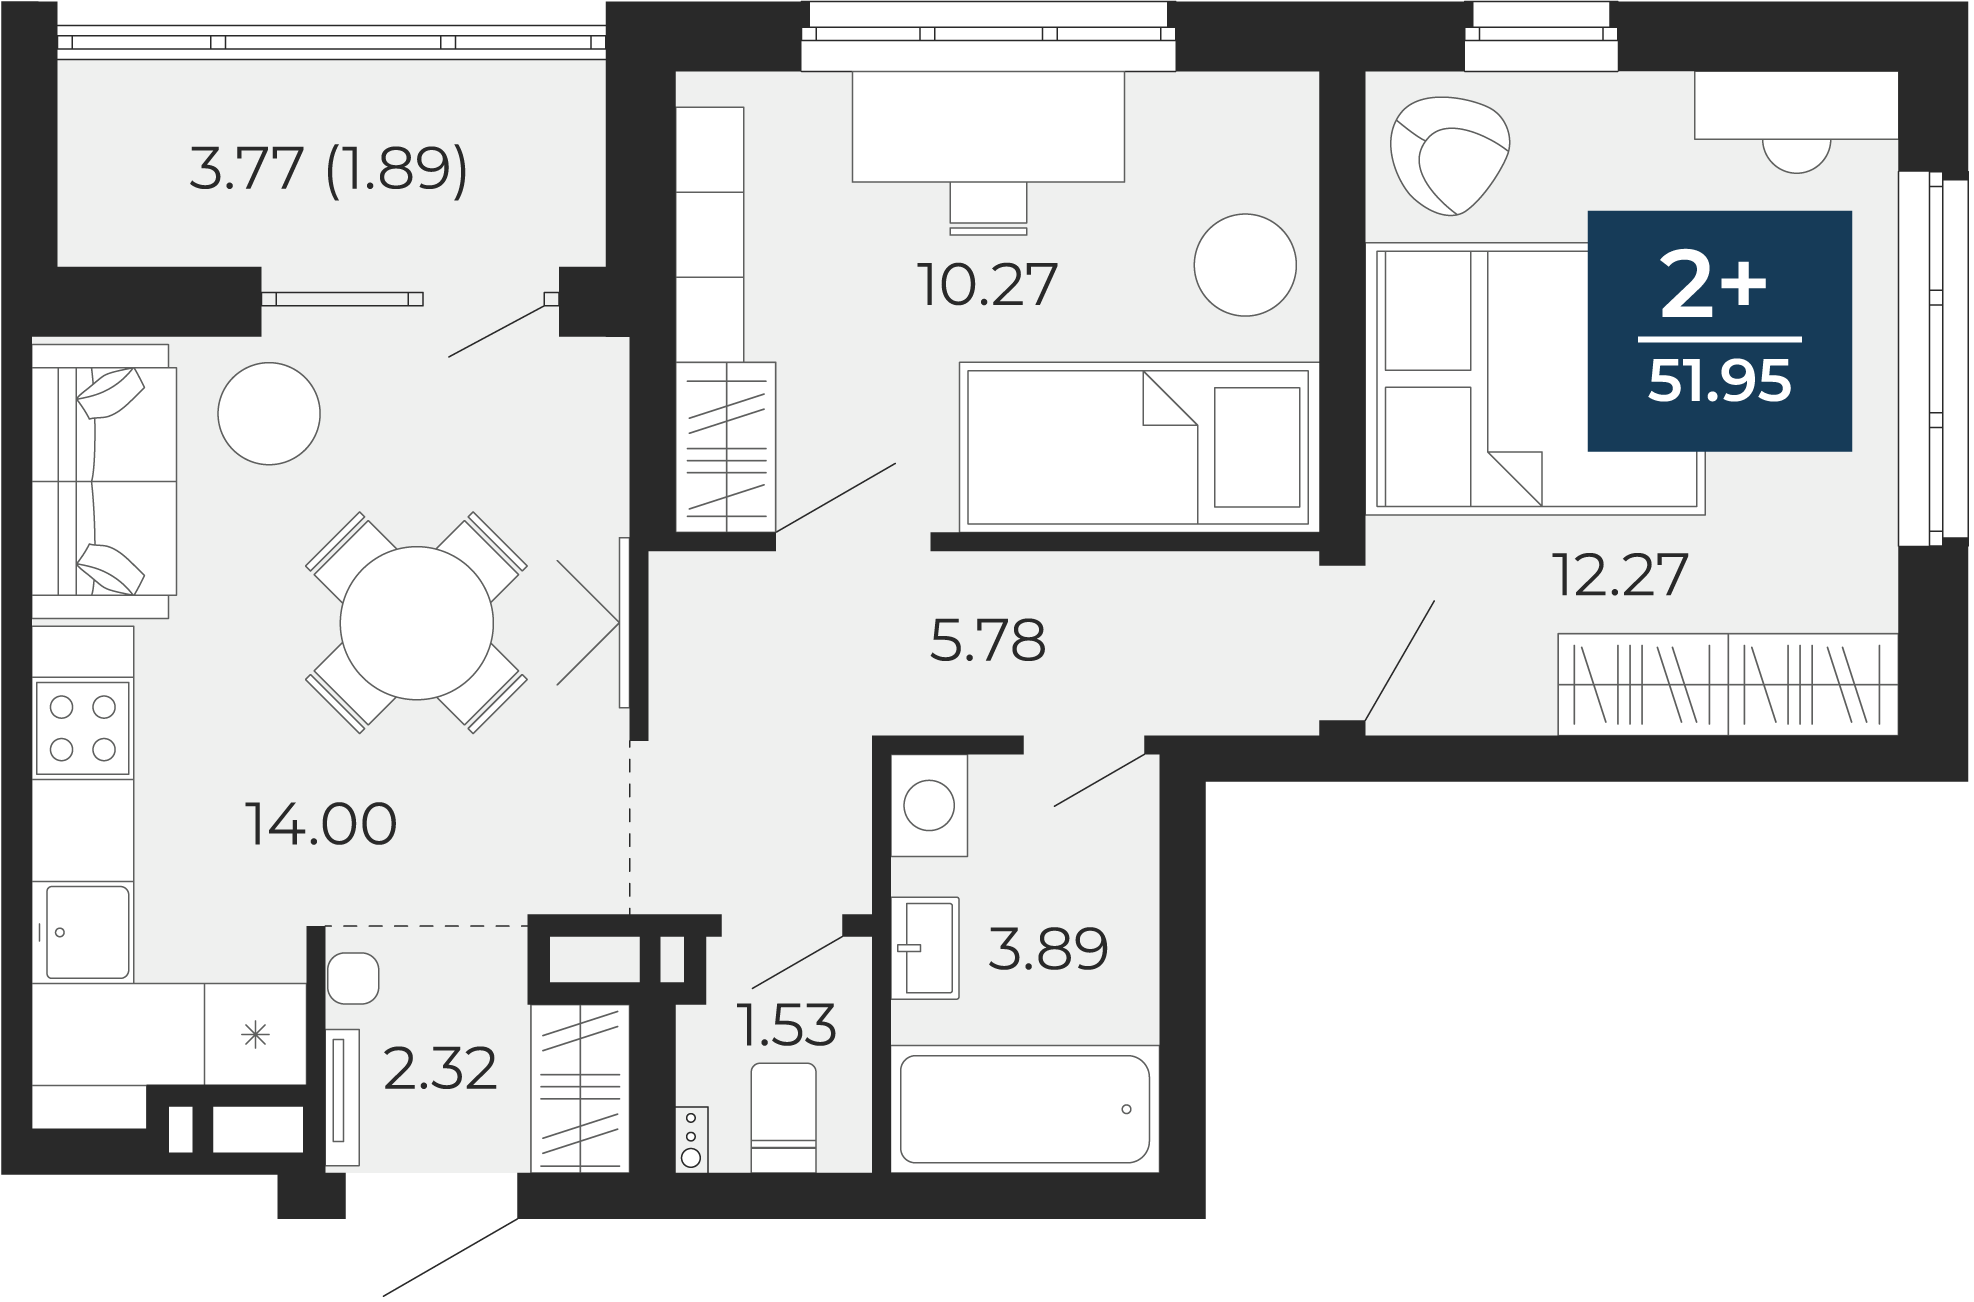 Квартира № 332, 2-комнатная, 51.95 кв. м, 11 этаж